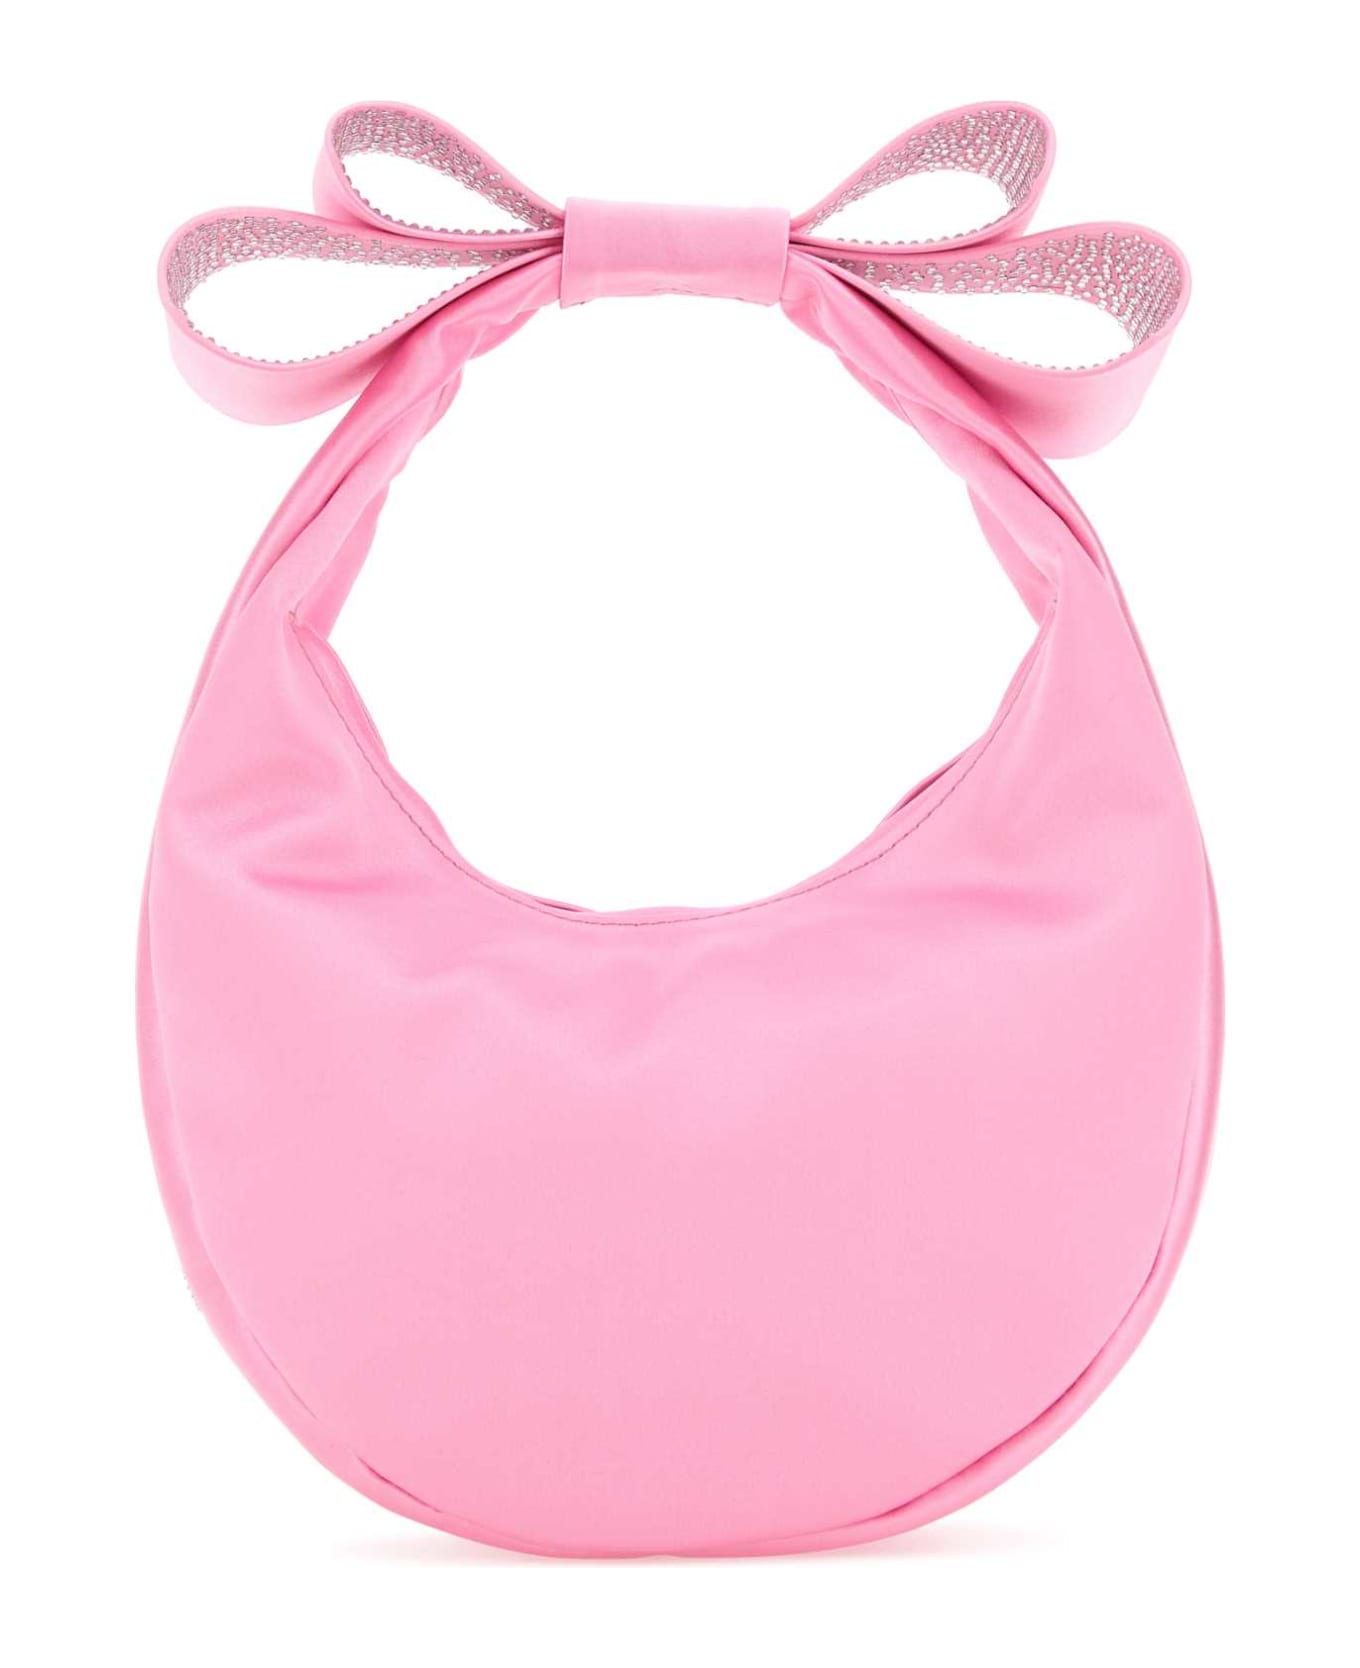 Mach & Mach Pink Satin Small Cadeau Handbag - PINK トートバッグ